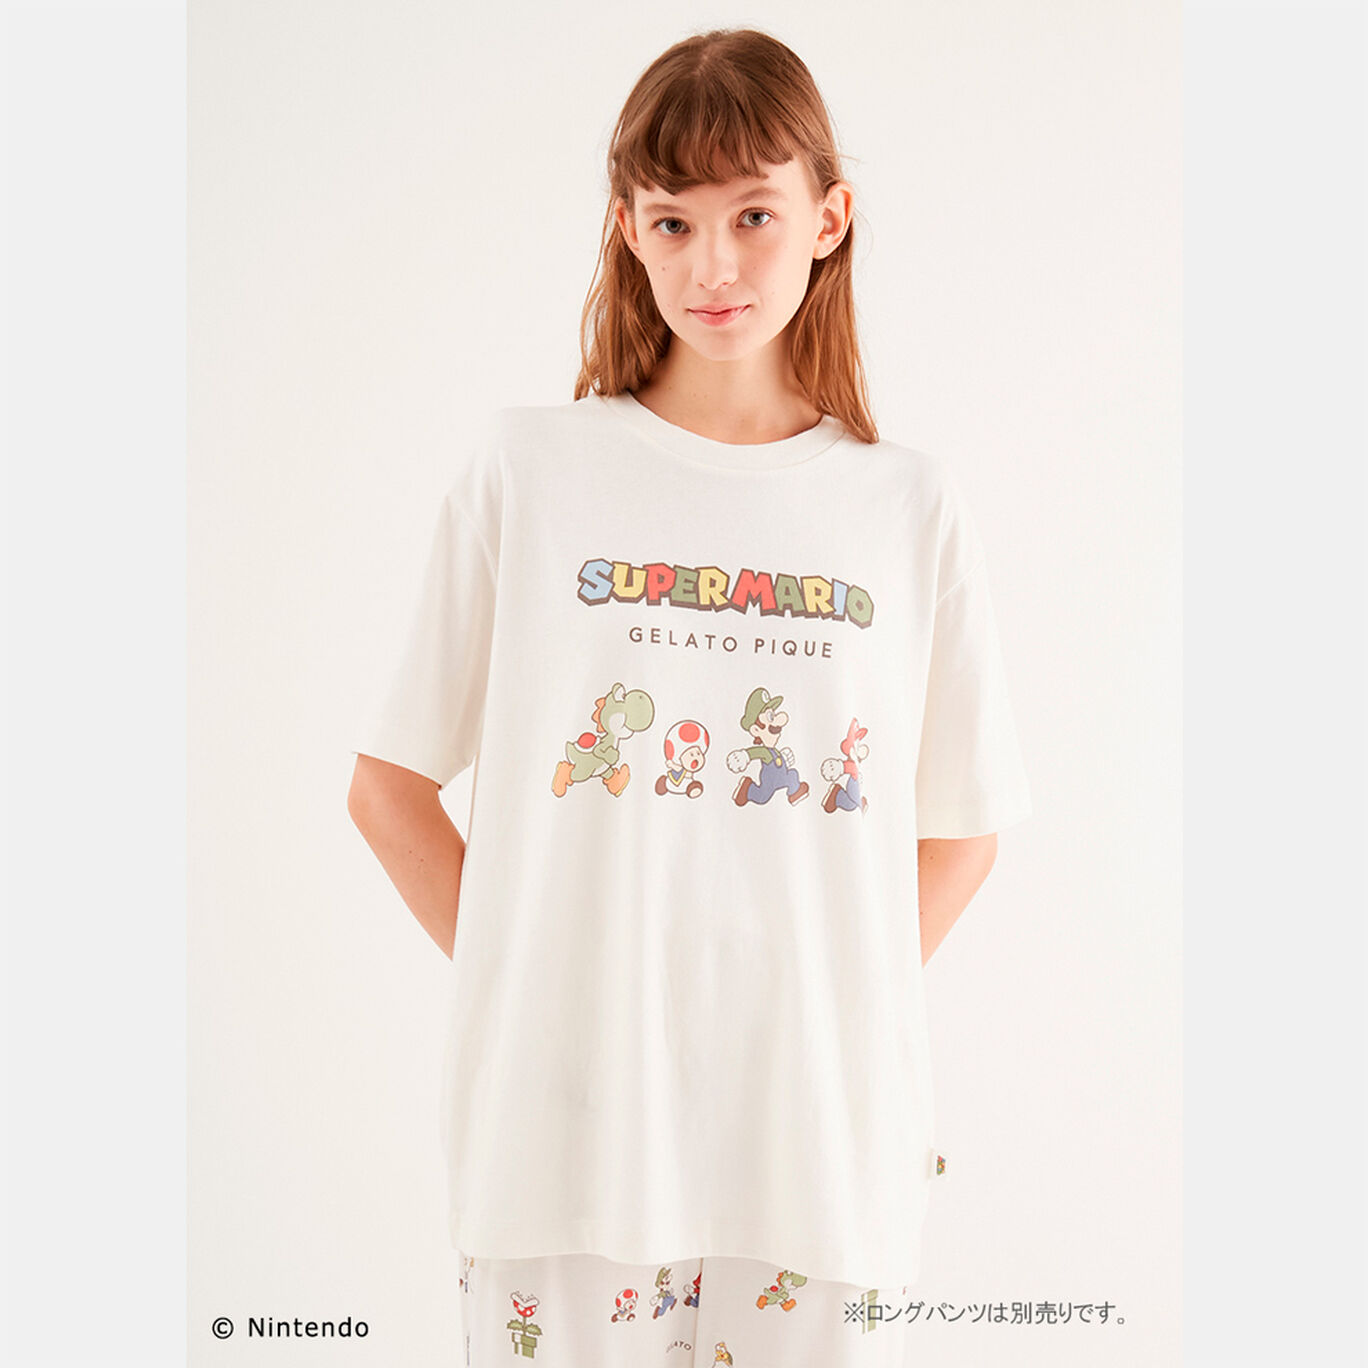 【スーパーマリオ】ユニセックスワンポイントTシャツ OWHT F【SUPER MARIO meets GELATO PIQUE】